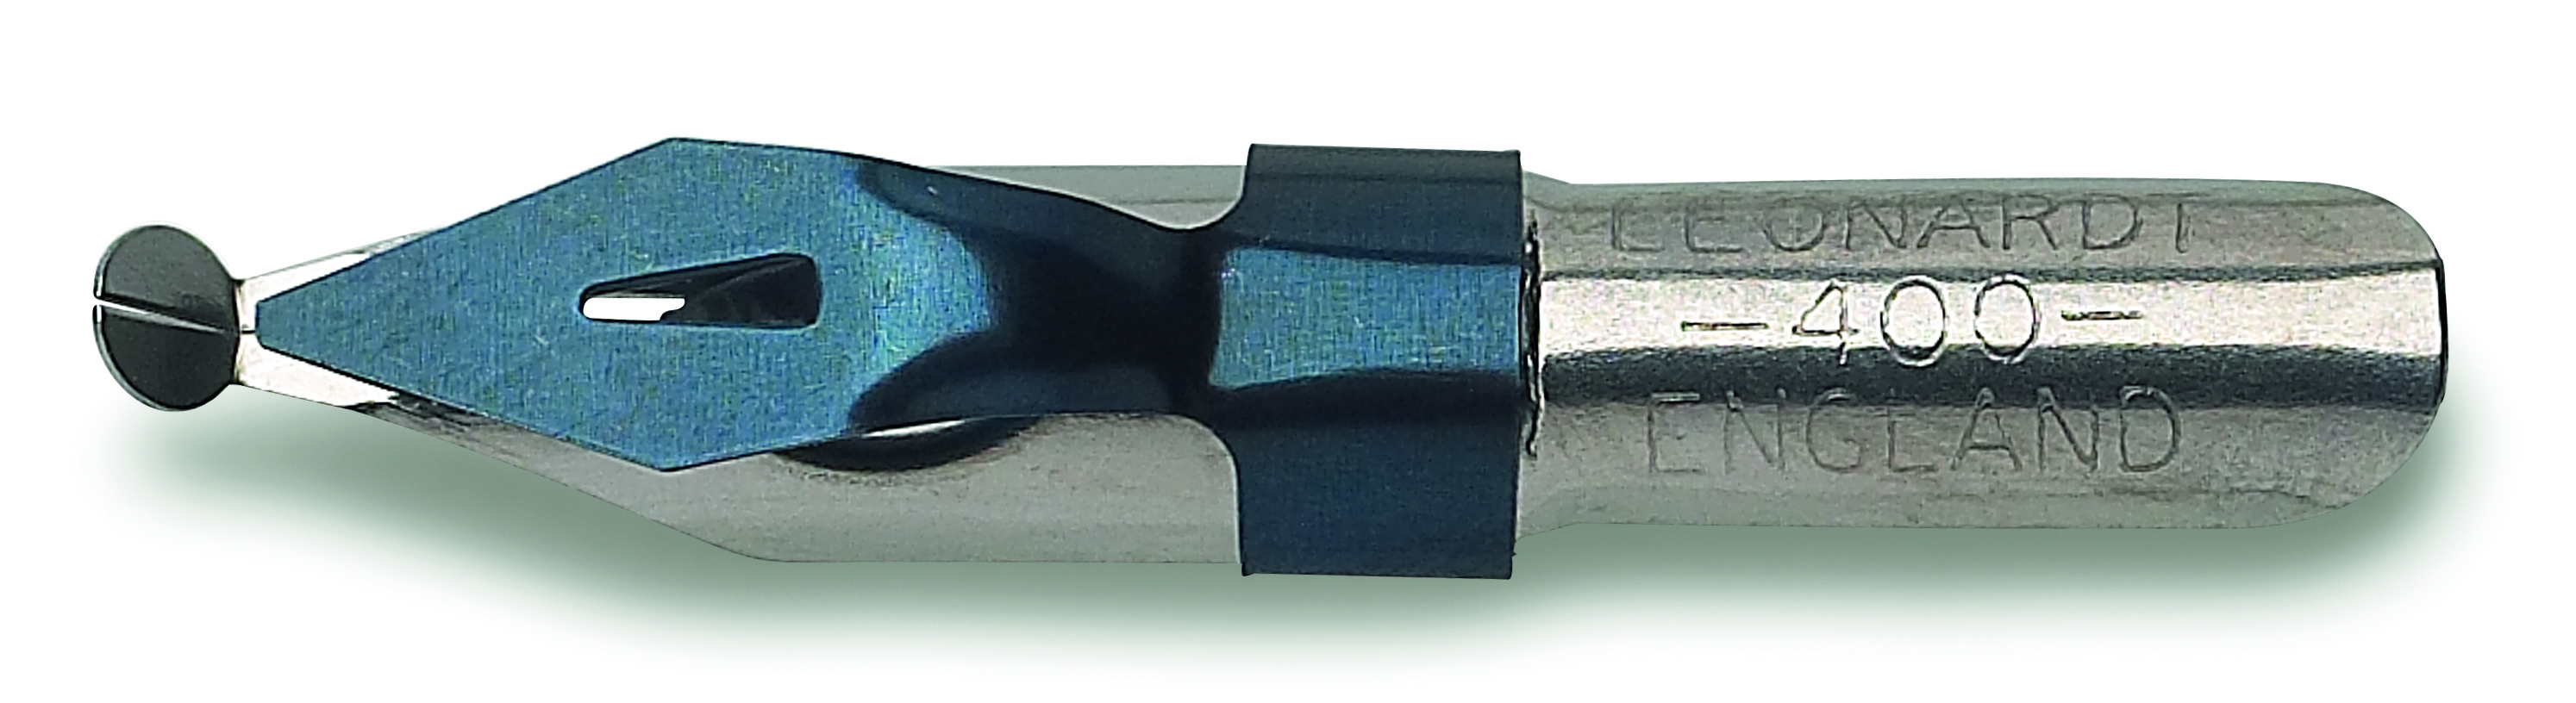 Перо для орнамента ORNAMENTAL полированное, линия 3мм по 99.00 руб от Manuscript pen company